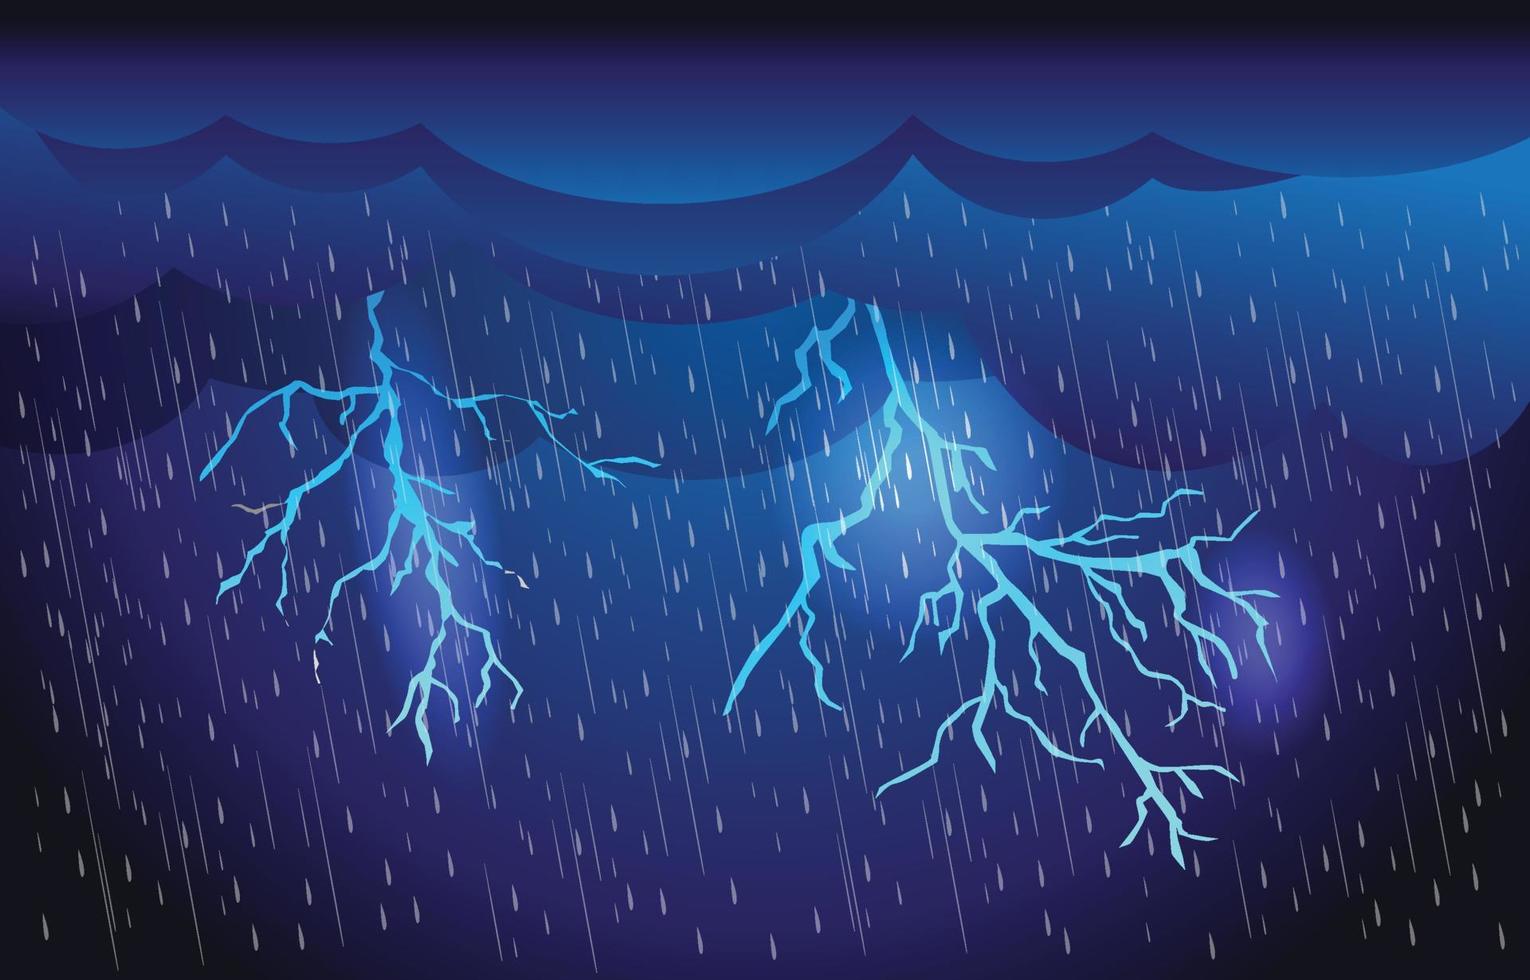 zware regen in donkere hemel, donderbliksem en wolken, regenseizoen, onweer, overstroming natuurramp, weer natuur achtergrond, vectorillustratie. vector